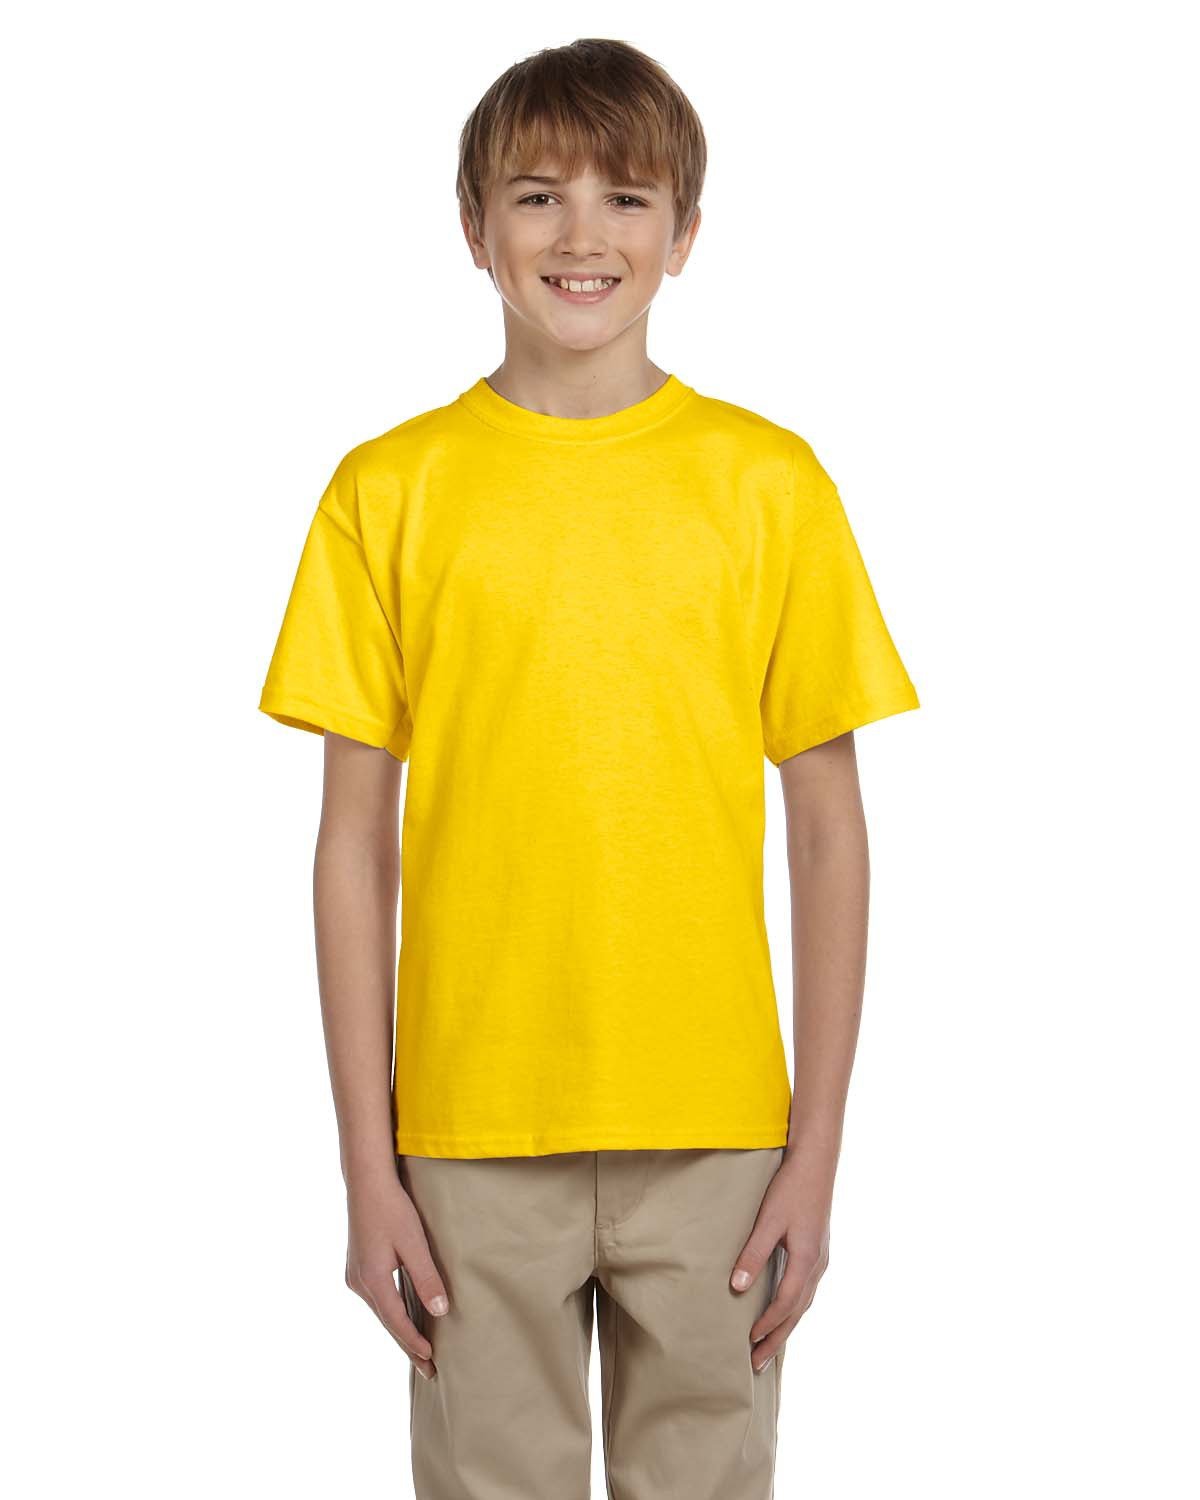 Personalised T-Shirt Boy Kid